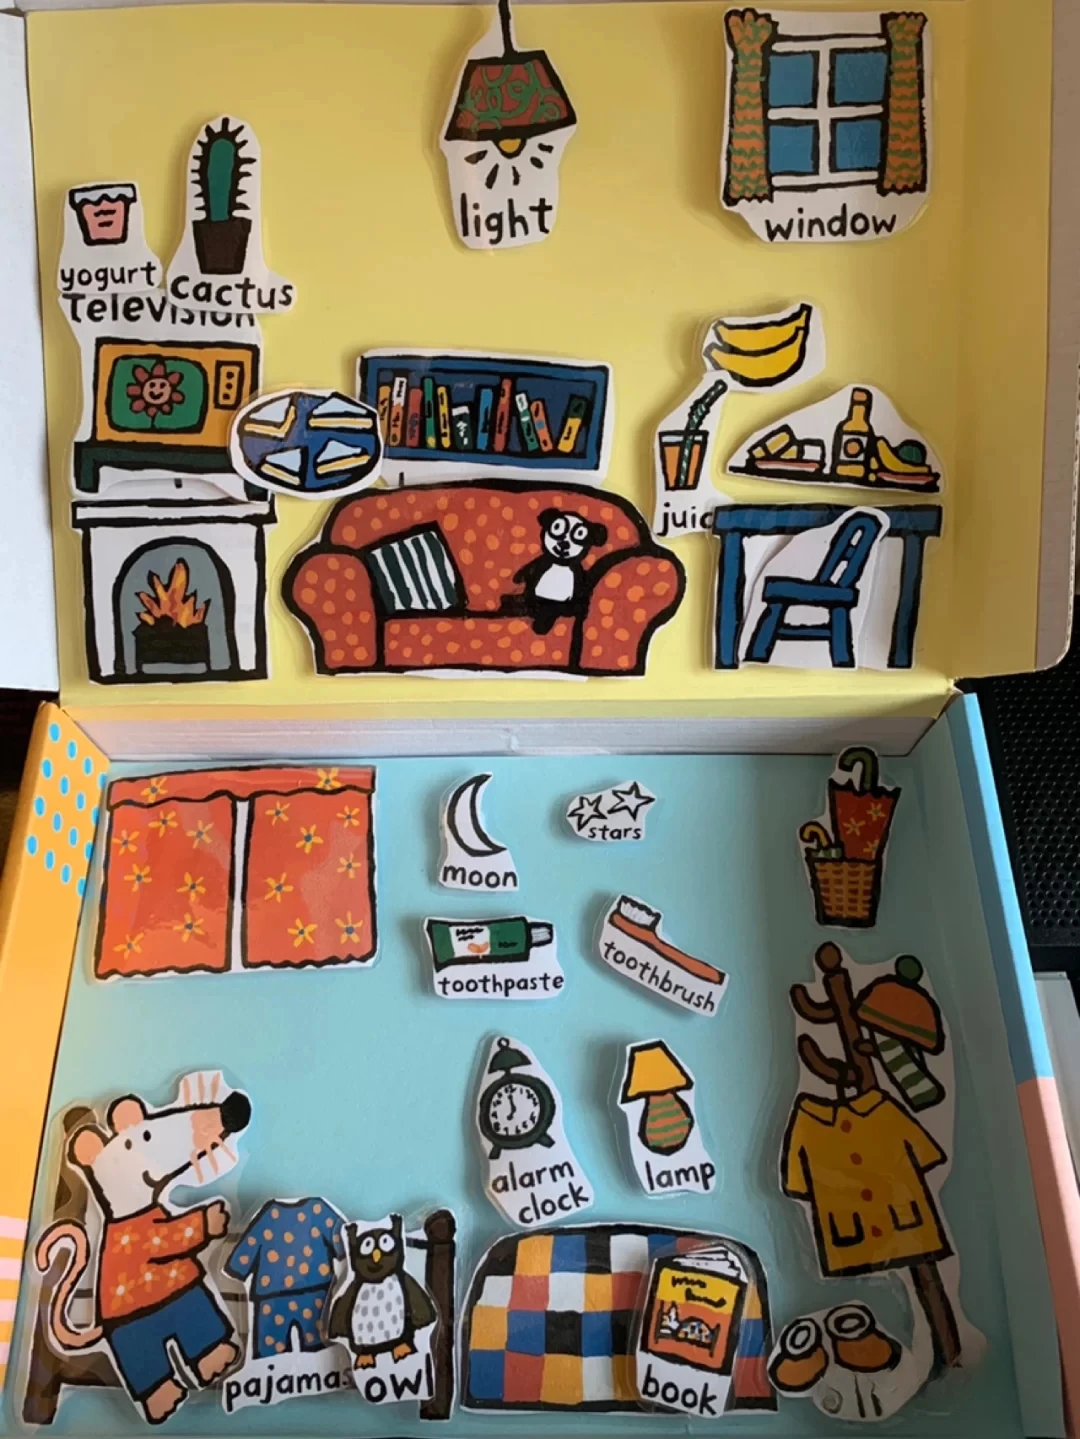 【Тихая книга】 Мышь Бобо Английская книжка с картинками расширяет возможности семьи, реквизит для раннего обучения, коробка для настольной игры, интерактивная тихая книга, оригинал